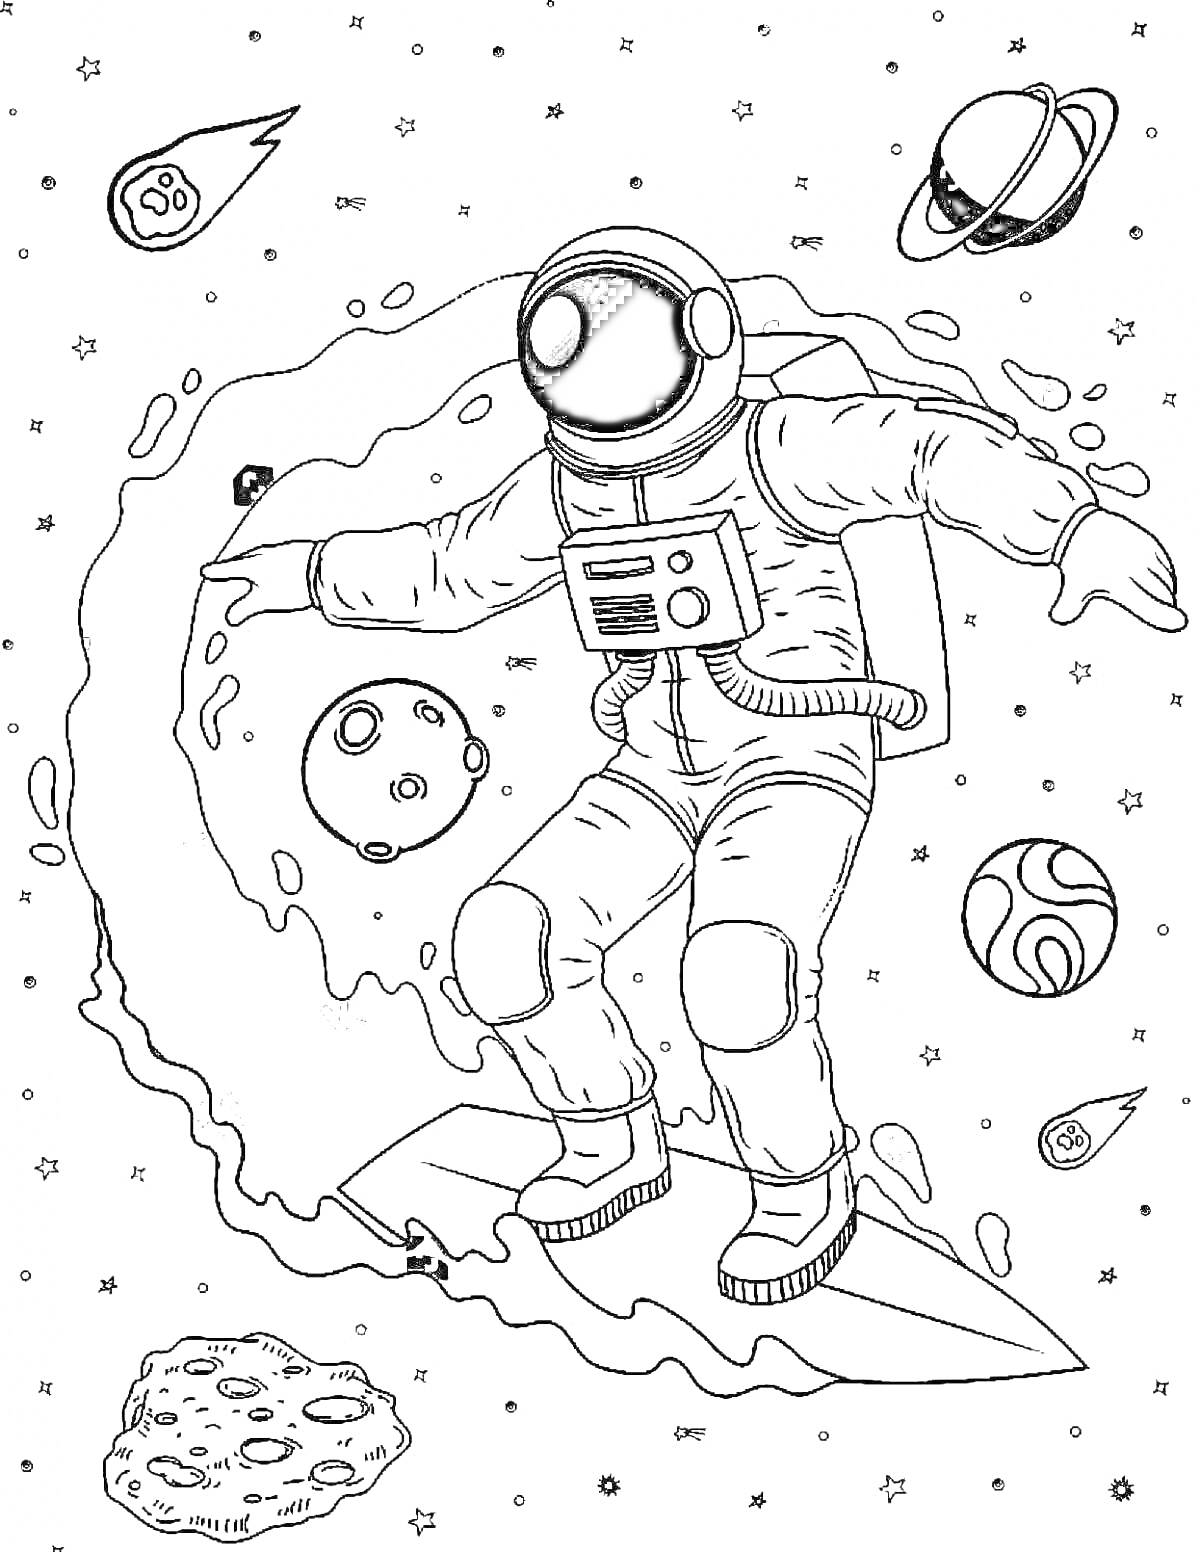 РаскраскаКосмонавт на серфинговой доске в космосе среди планет, метеоритов и звезд